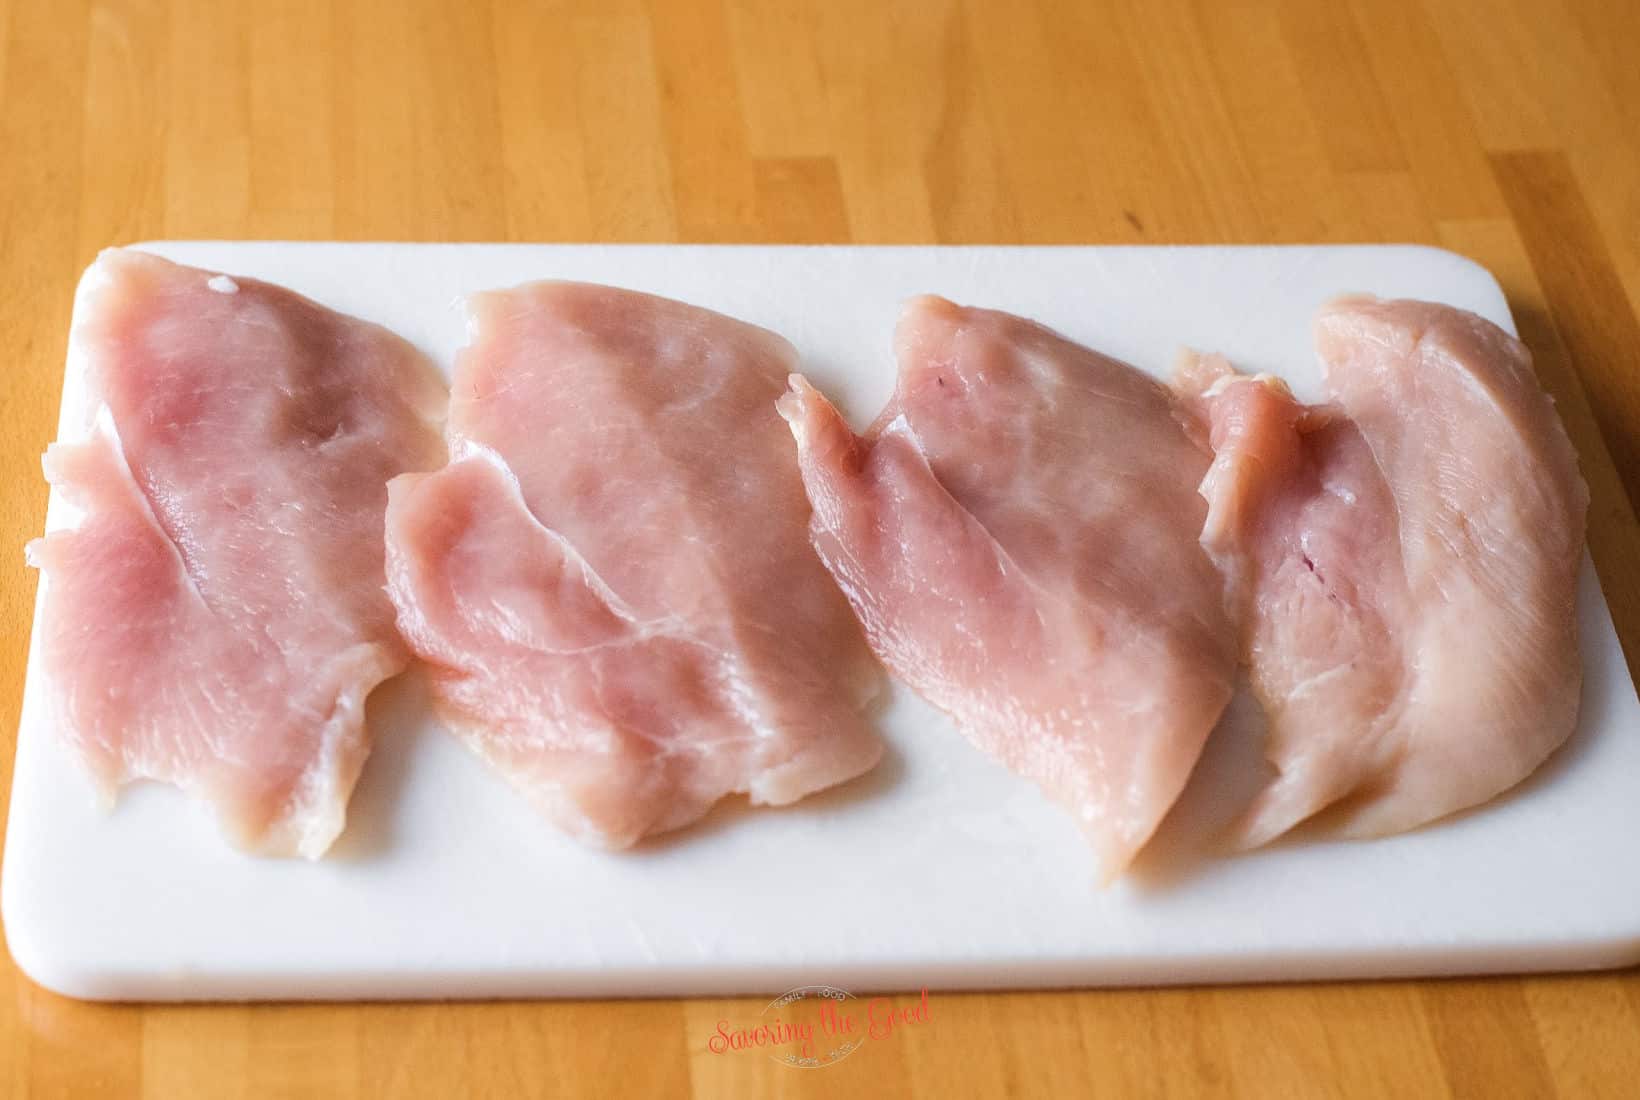 split open chicken breasts for chicken cordon bleu